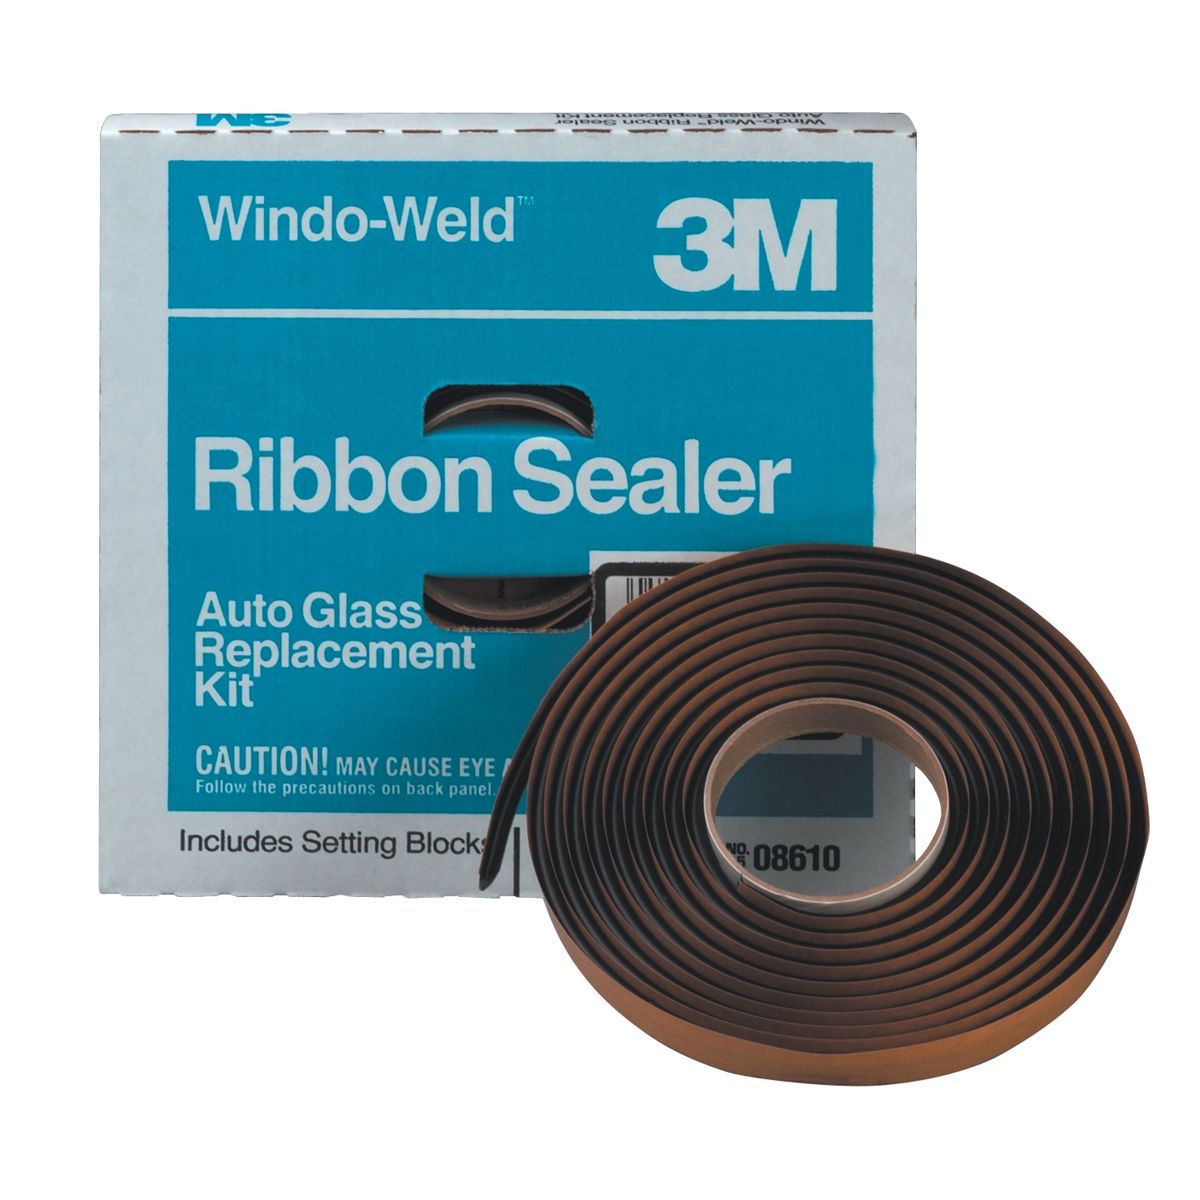 Window-Weld Round Ribbon Sealer, 1/4 Inch